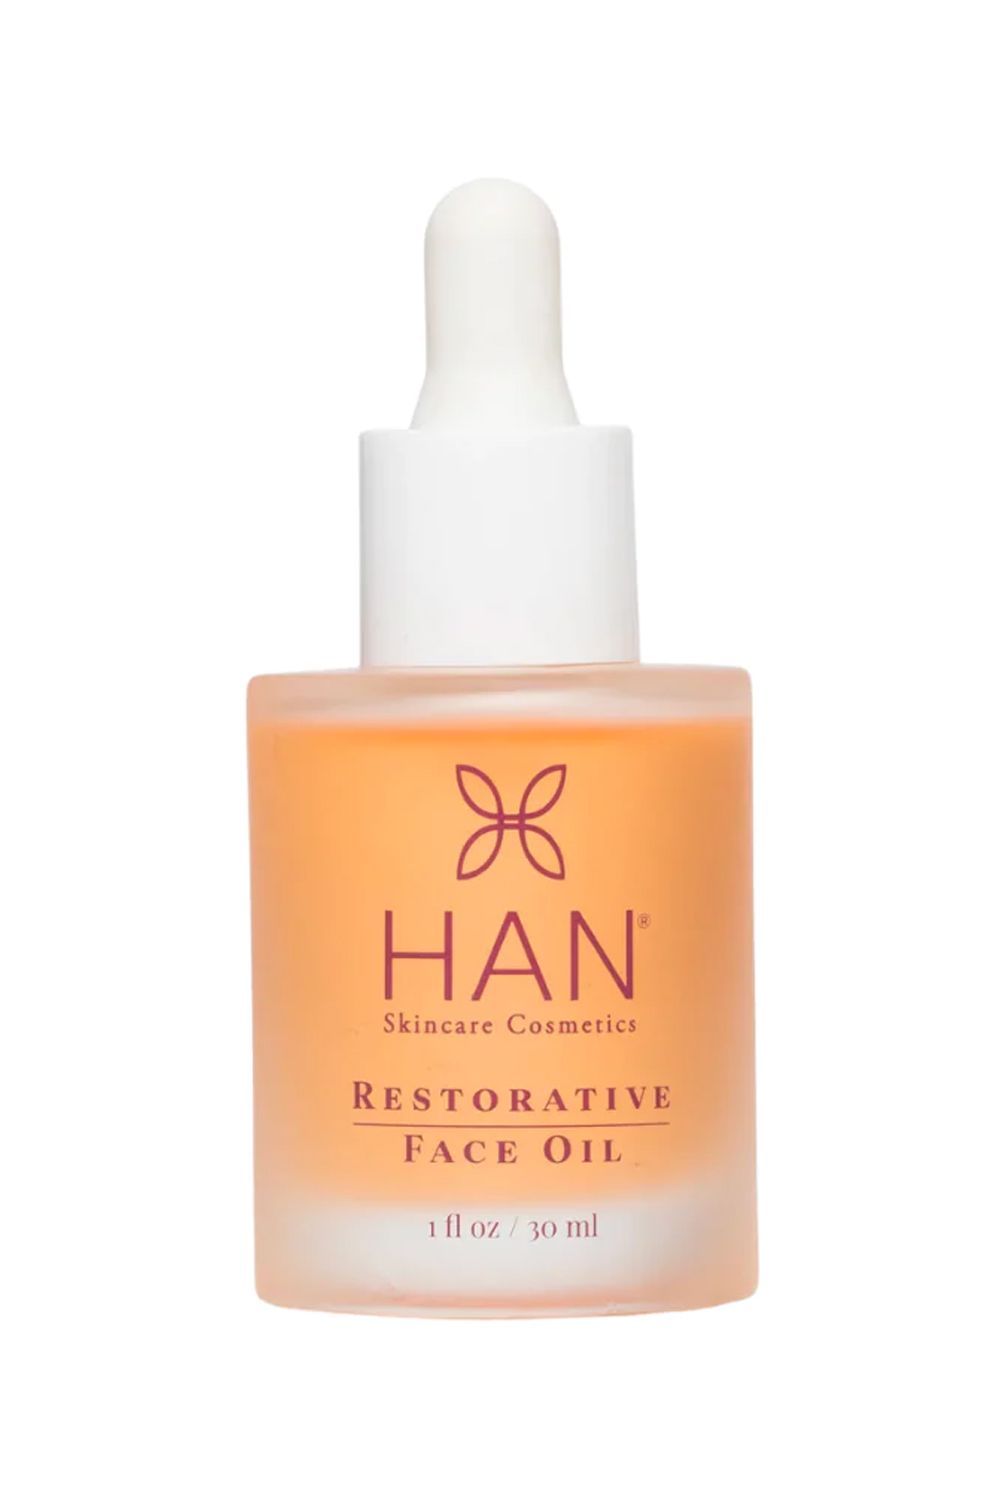 HAN Skincare Cosmetics Restorative Face Oil